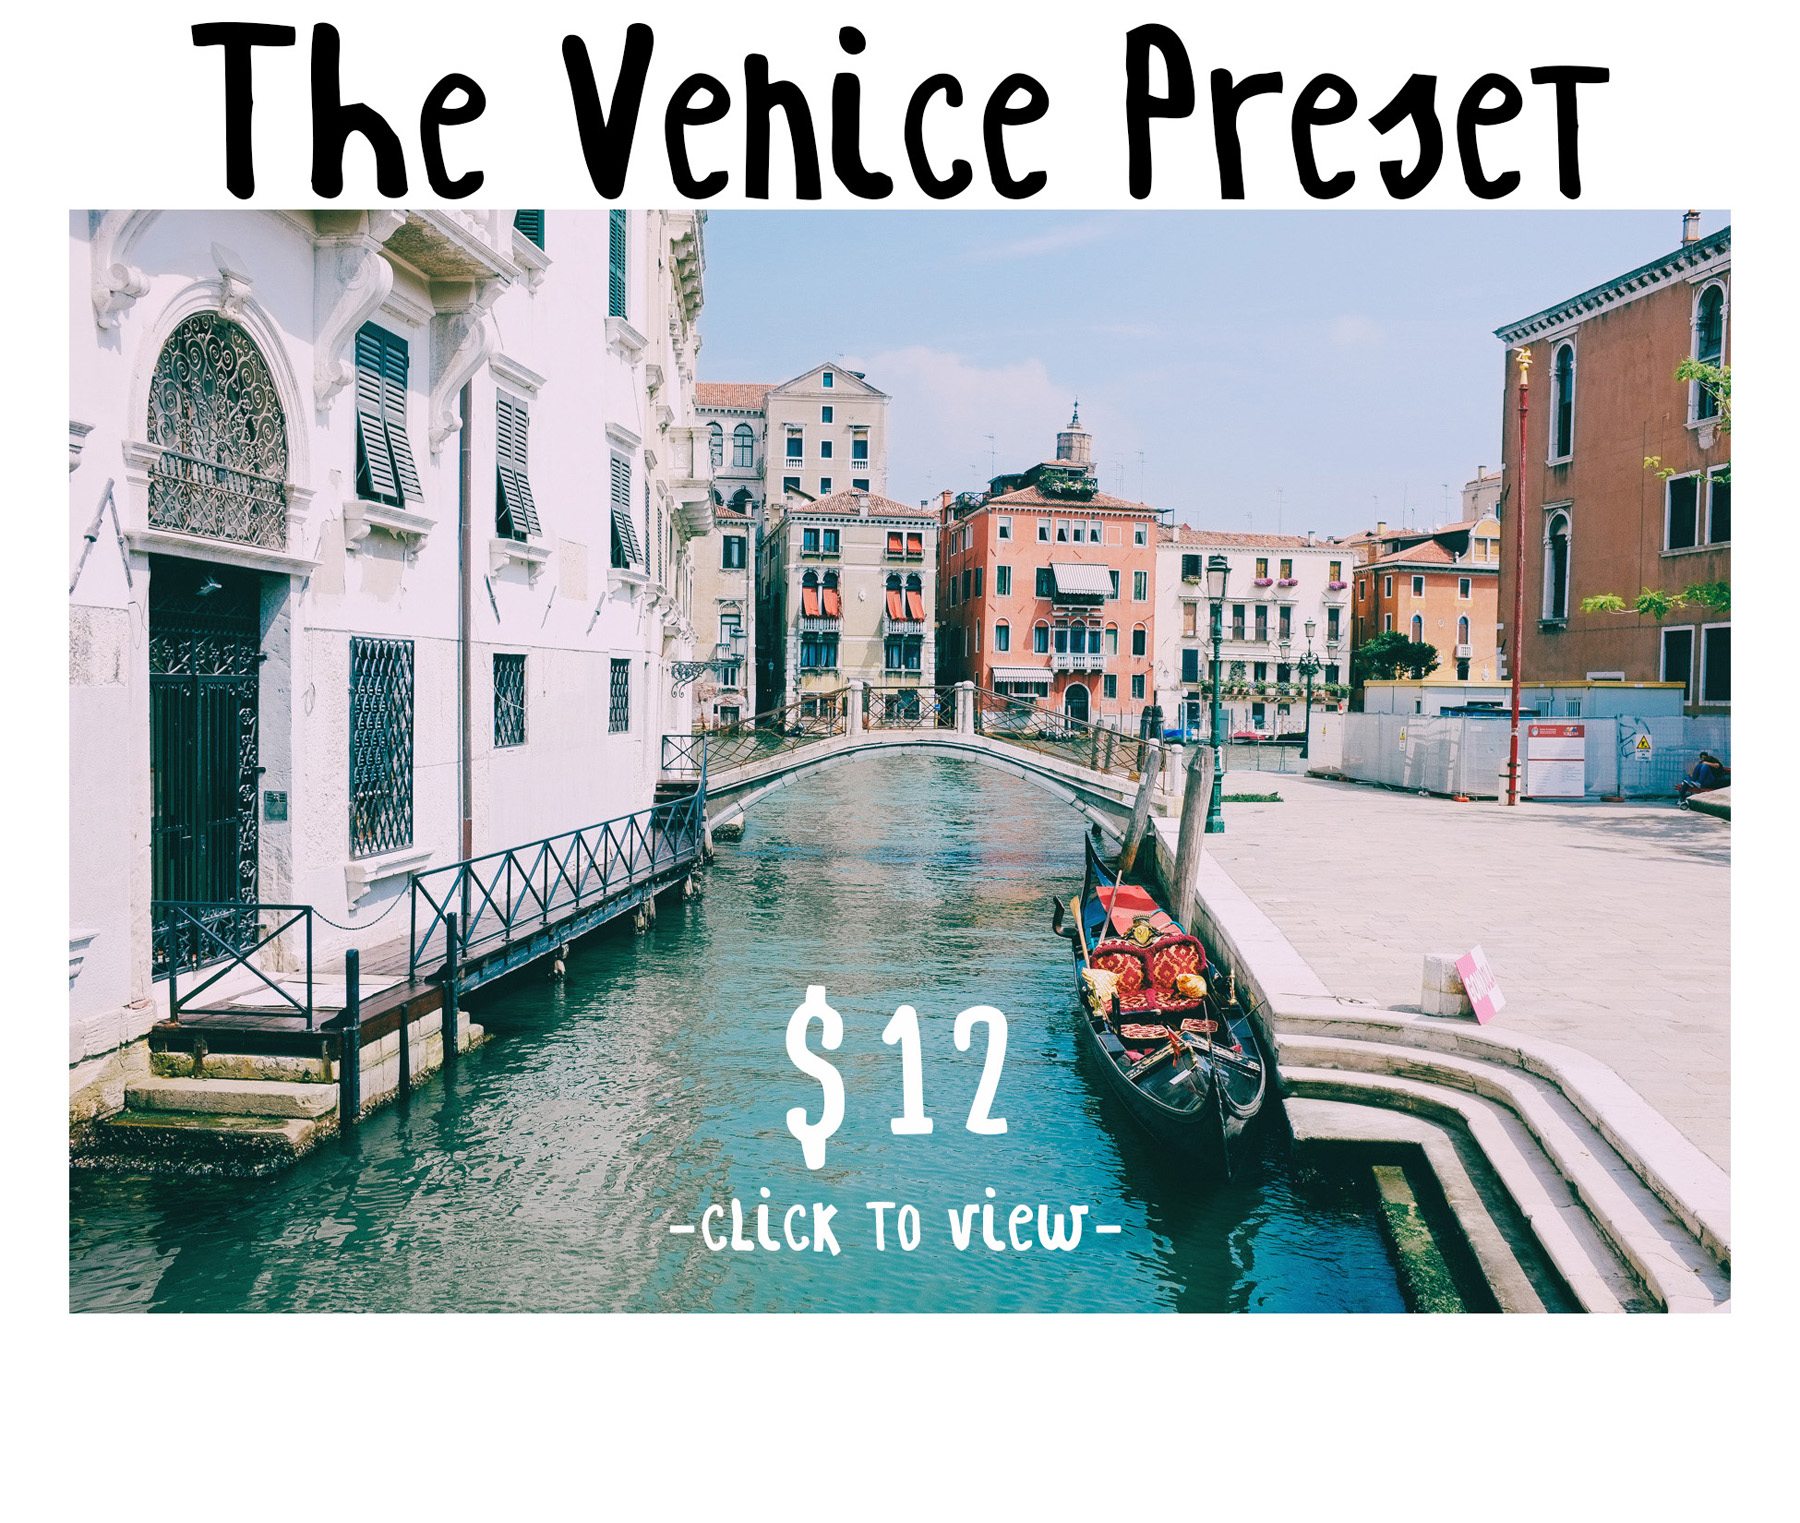 “Venice